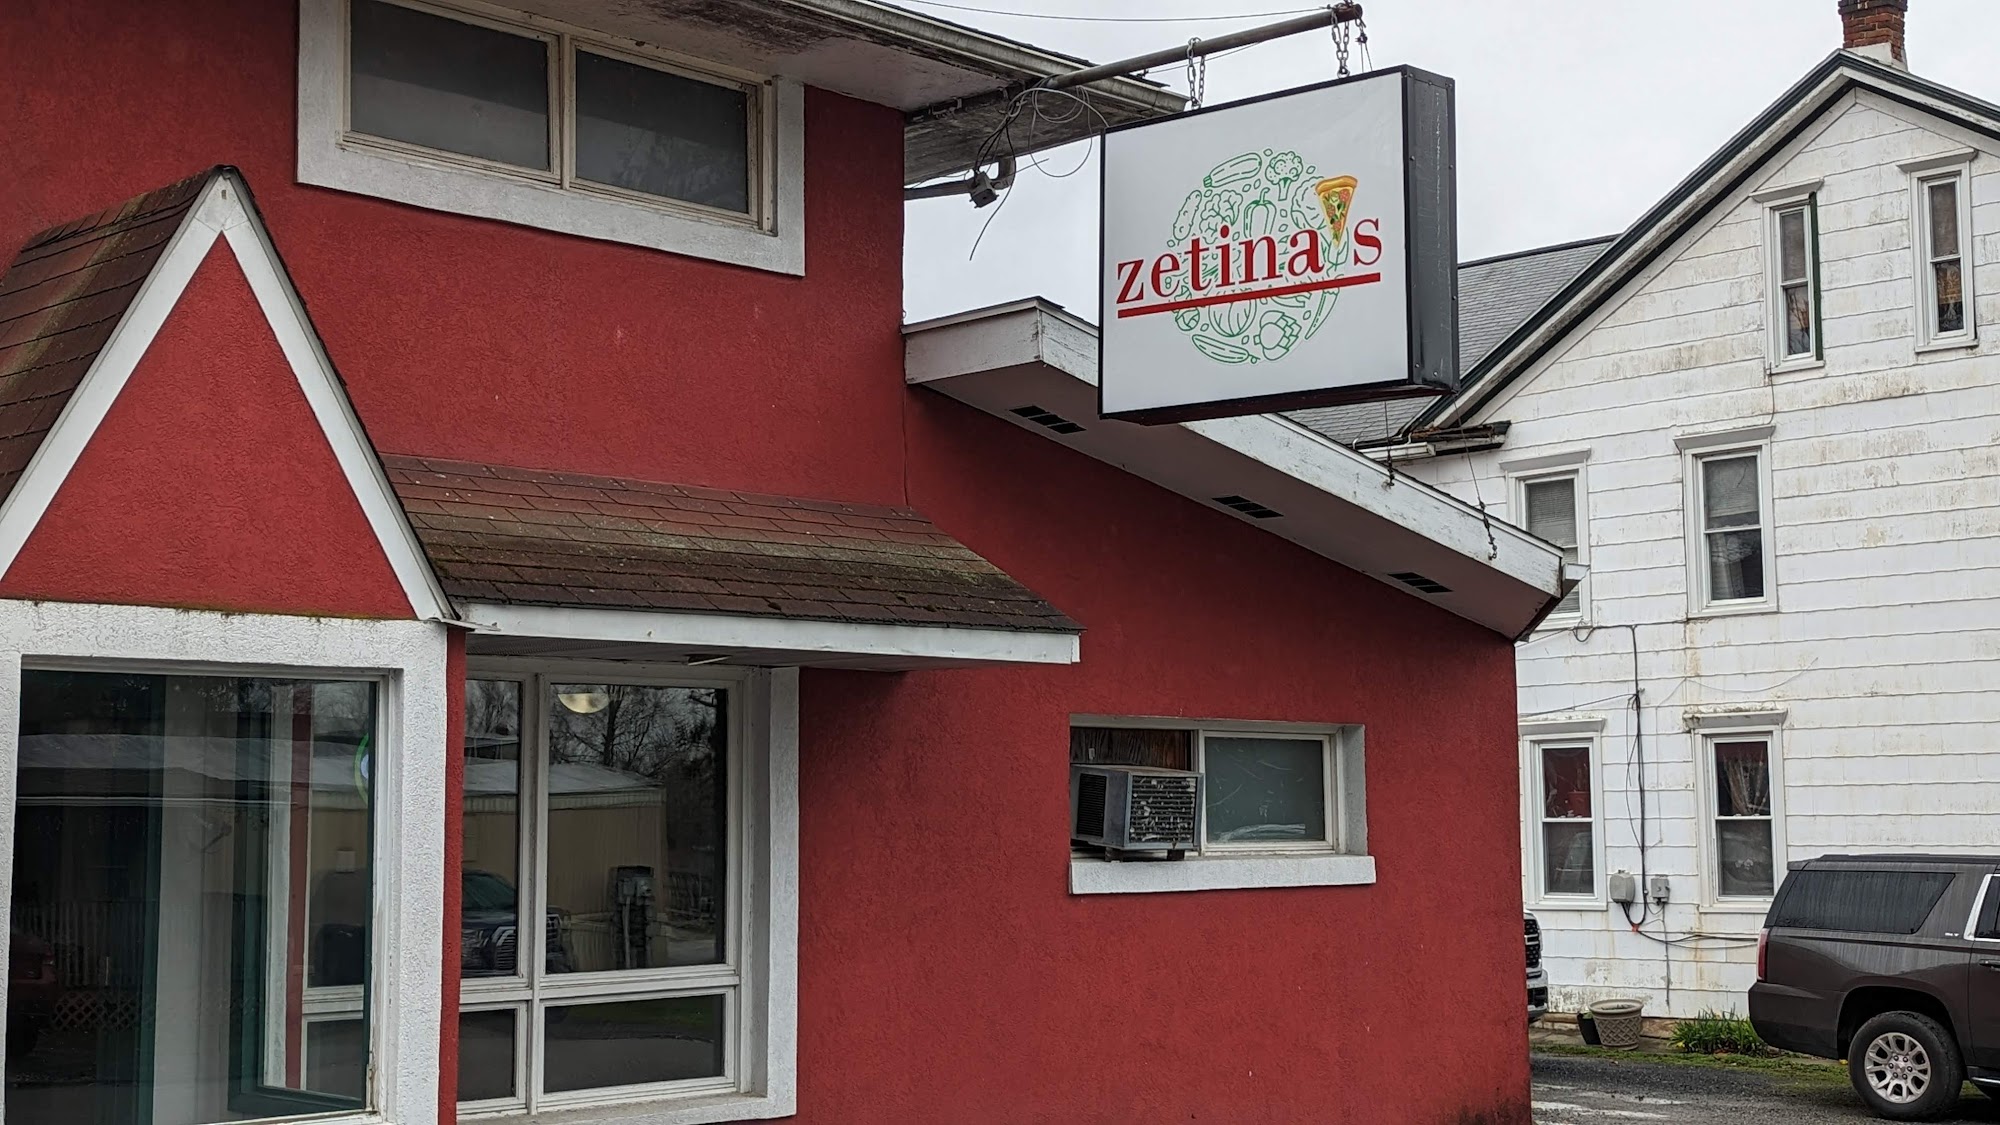 Zetina's